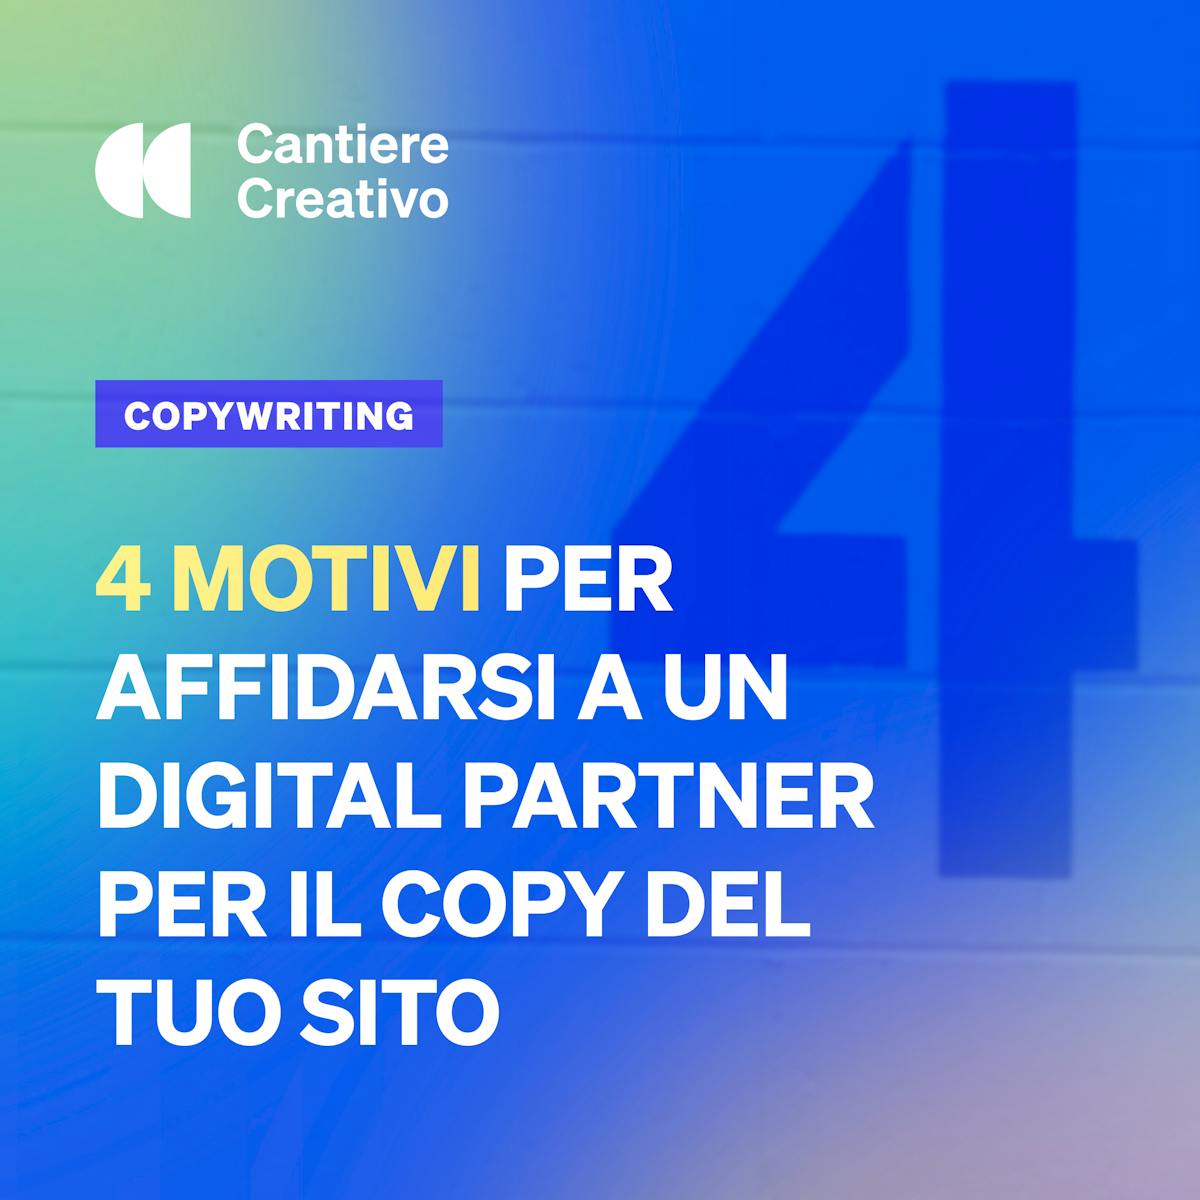 Copertina dell'articolo sui 4 Motivi per affidarsi a un digital partner per il copy del sito